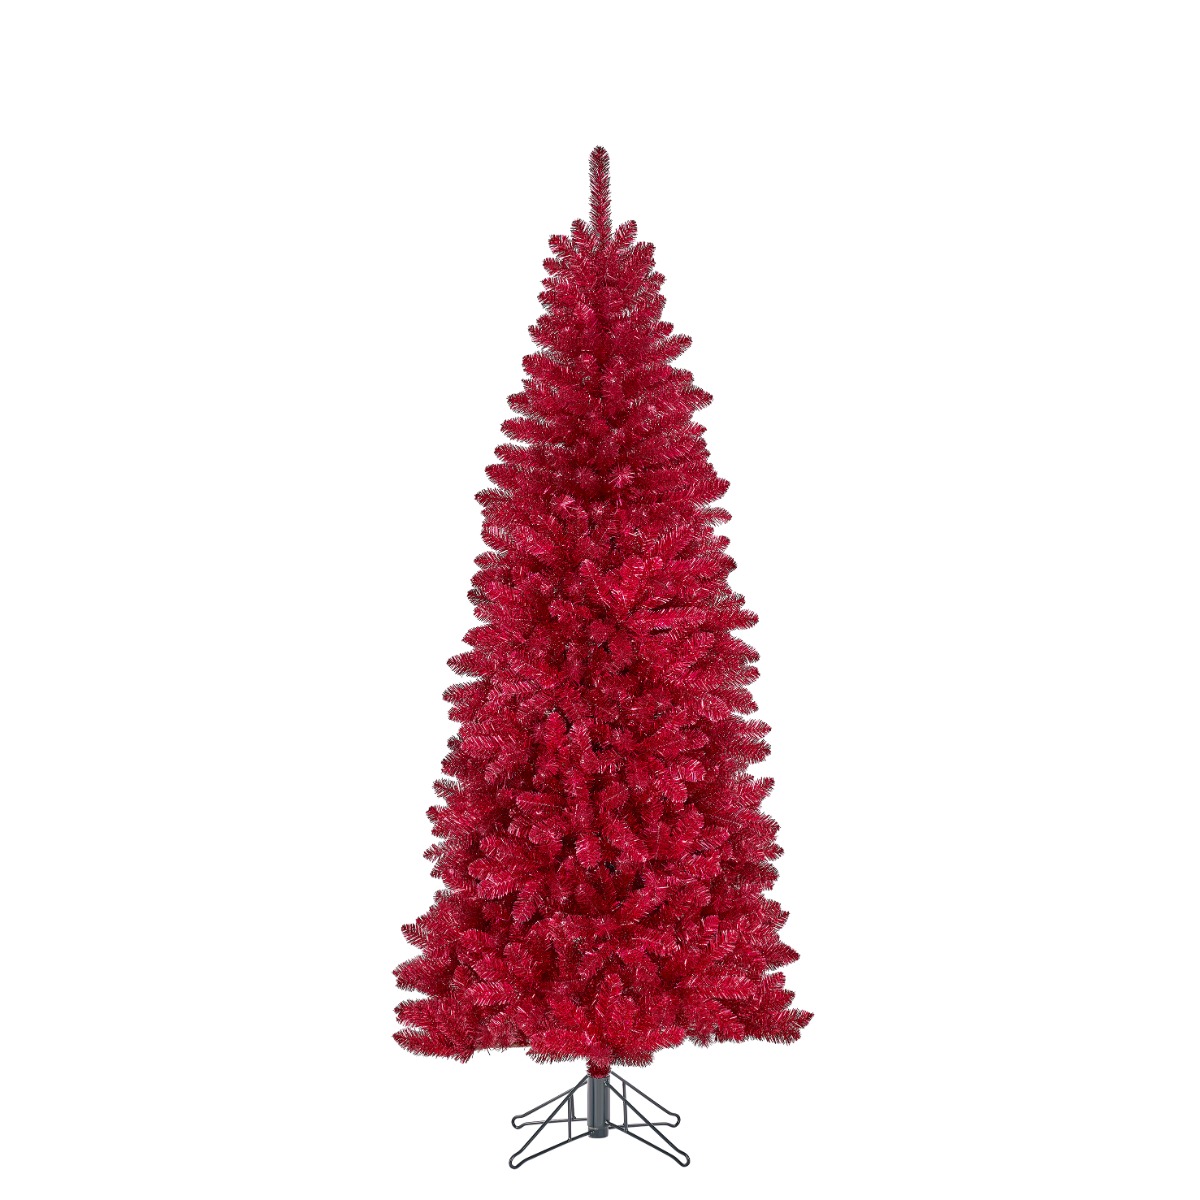 Colchester kunstigt rødt juletræ 185 cm højt